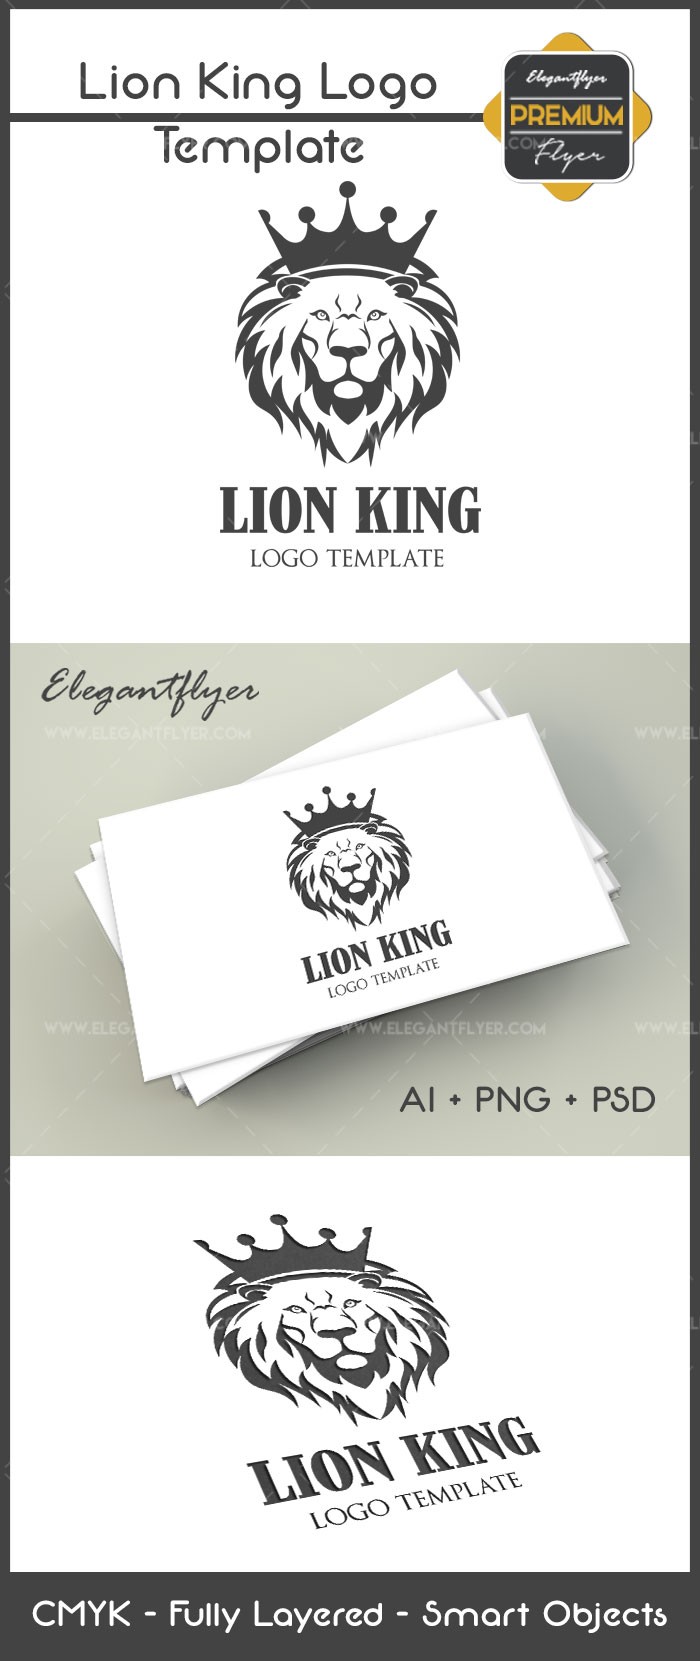 Le Roi Lion by ElegantFlyer